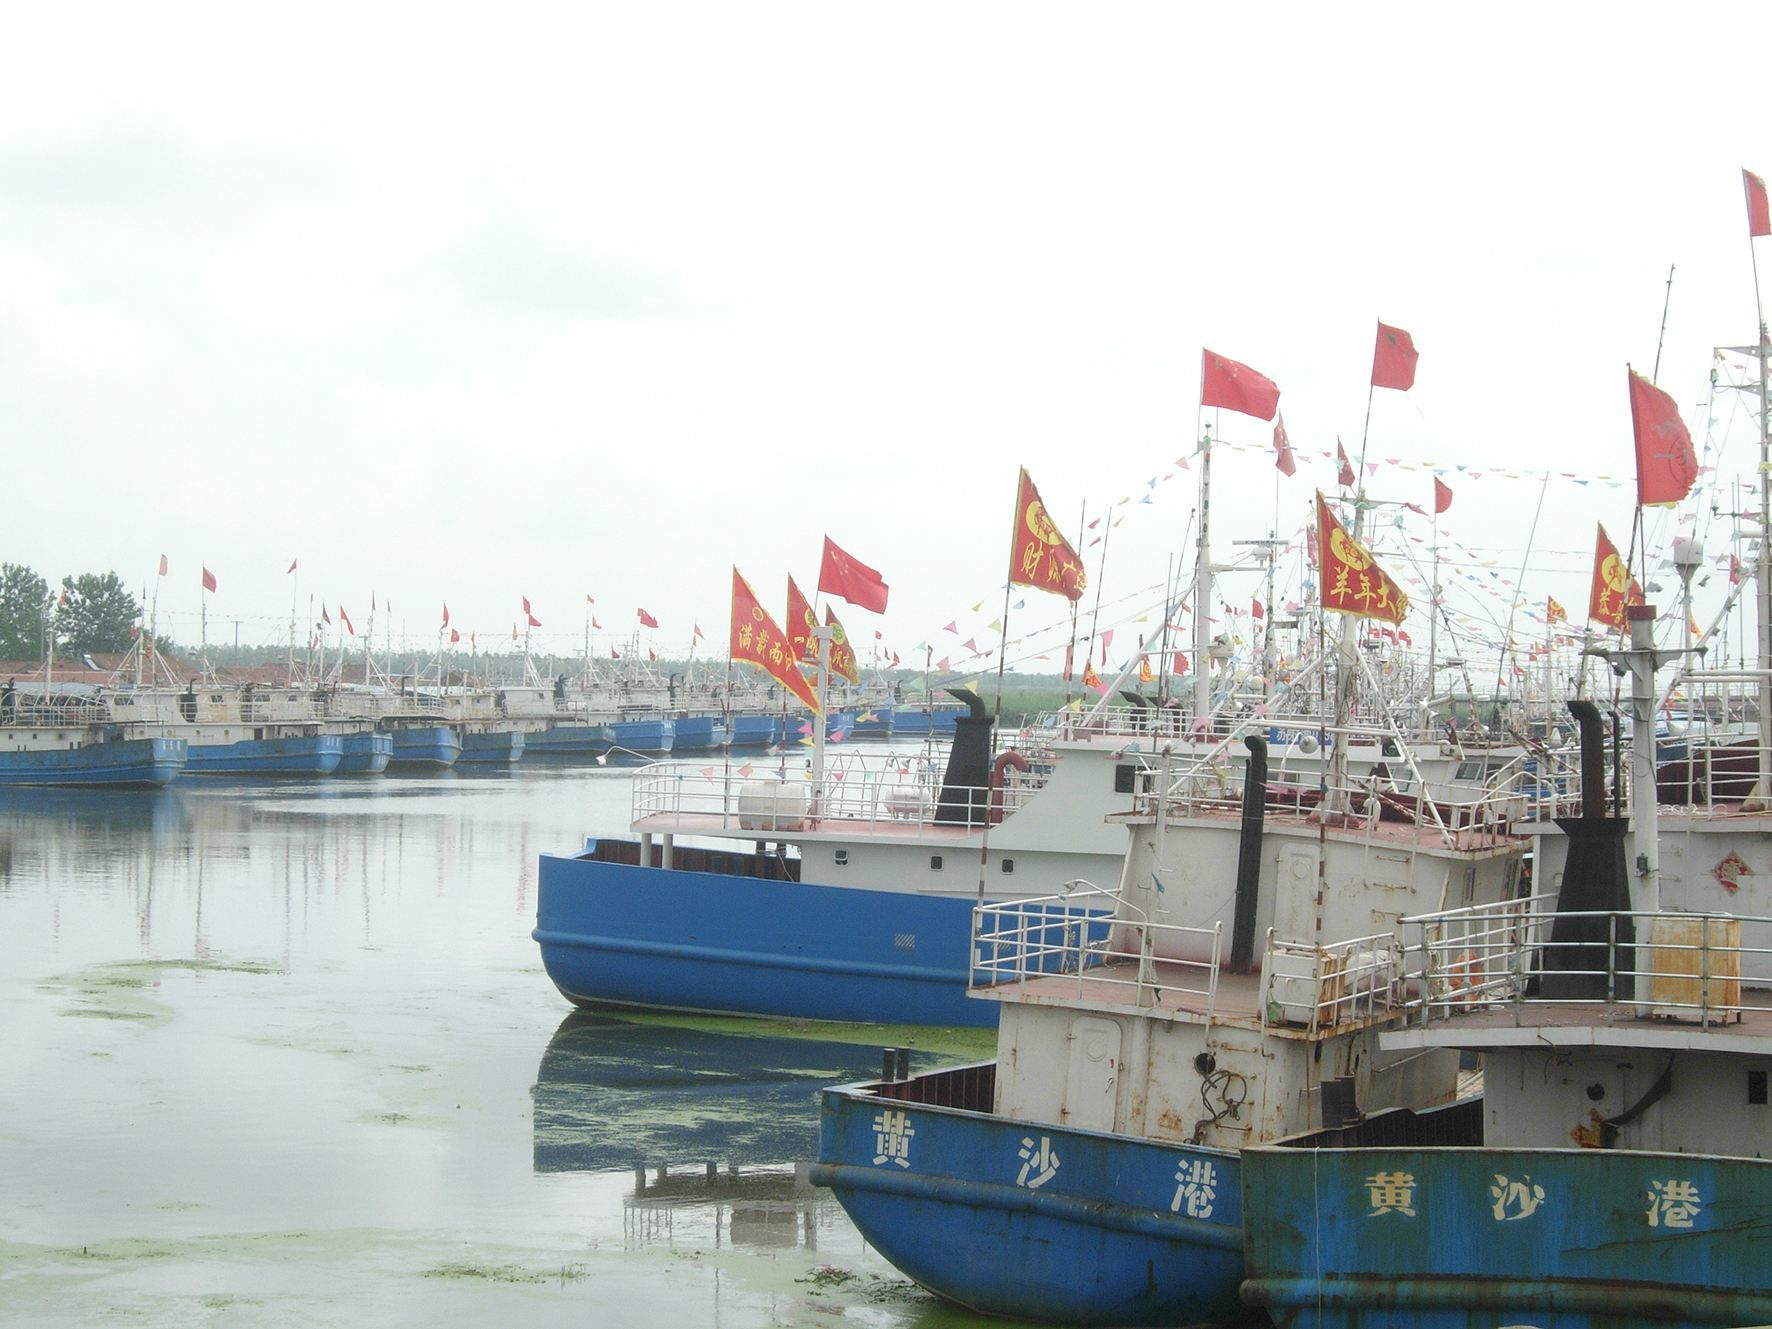 资料图9月17日,国家中心渔港——射阳县黄沙港马达声轰鸣,一艘艘渔船